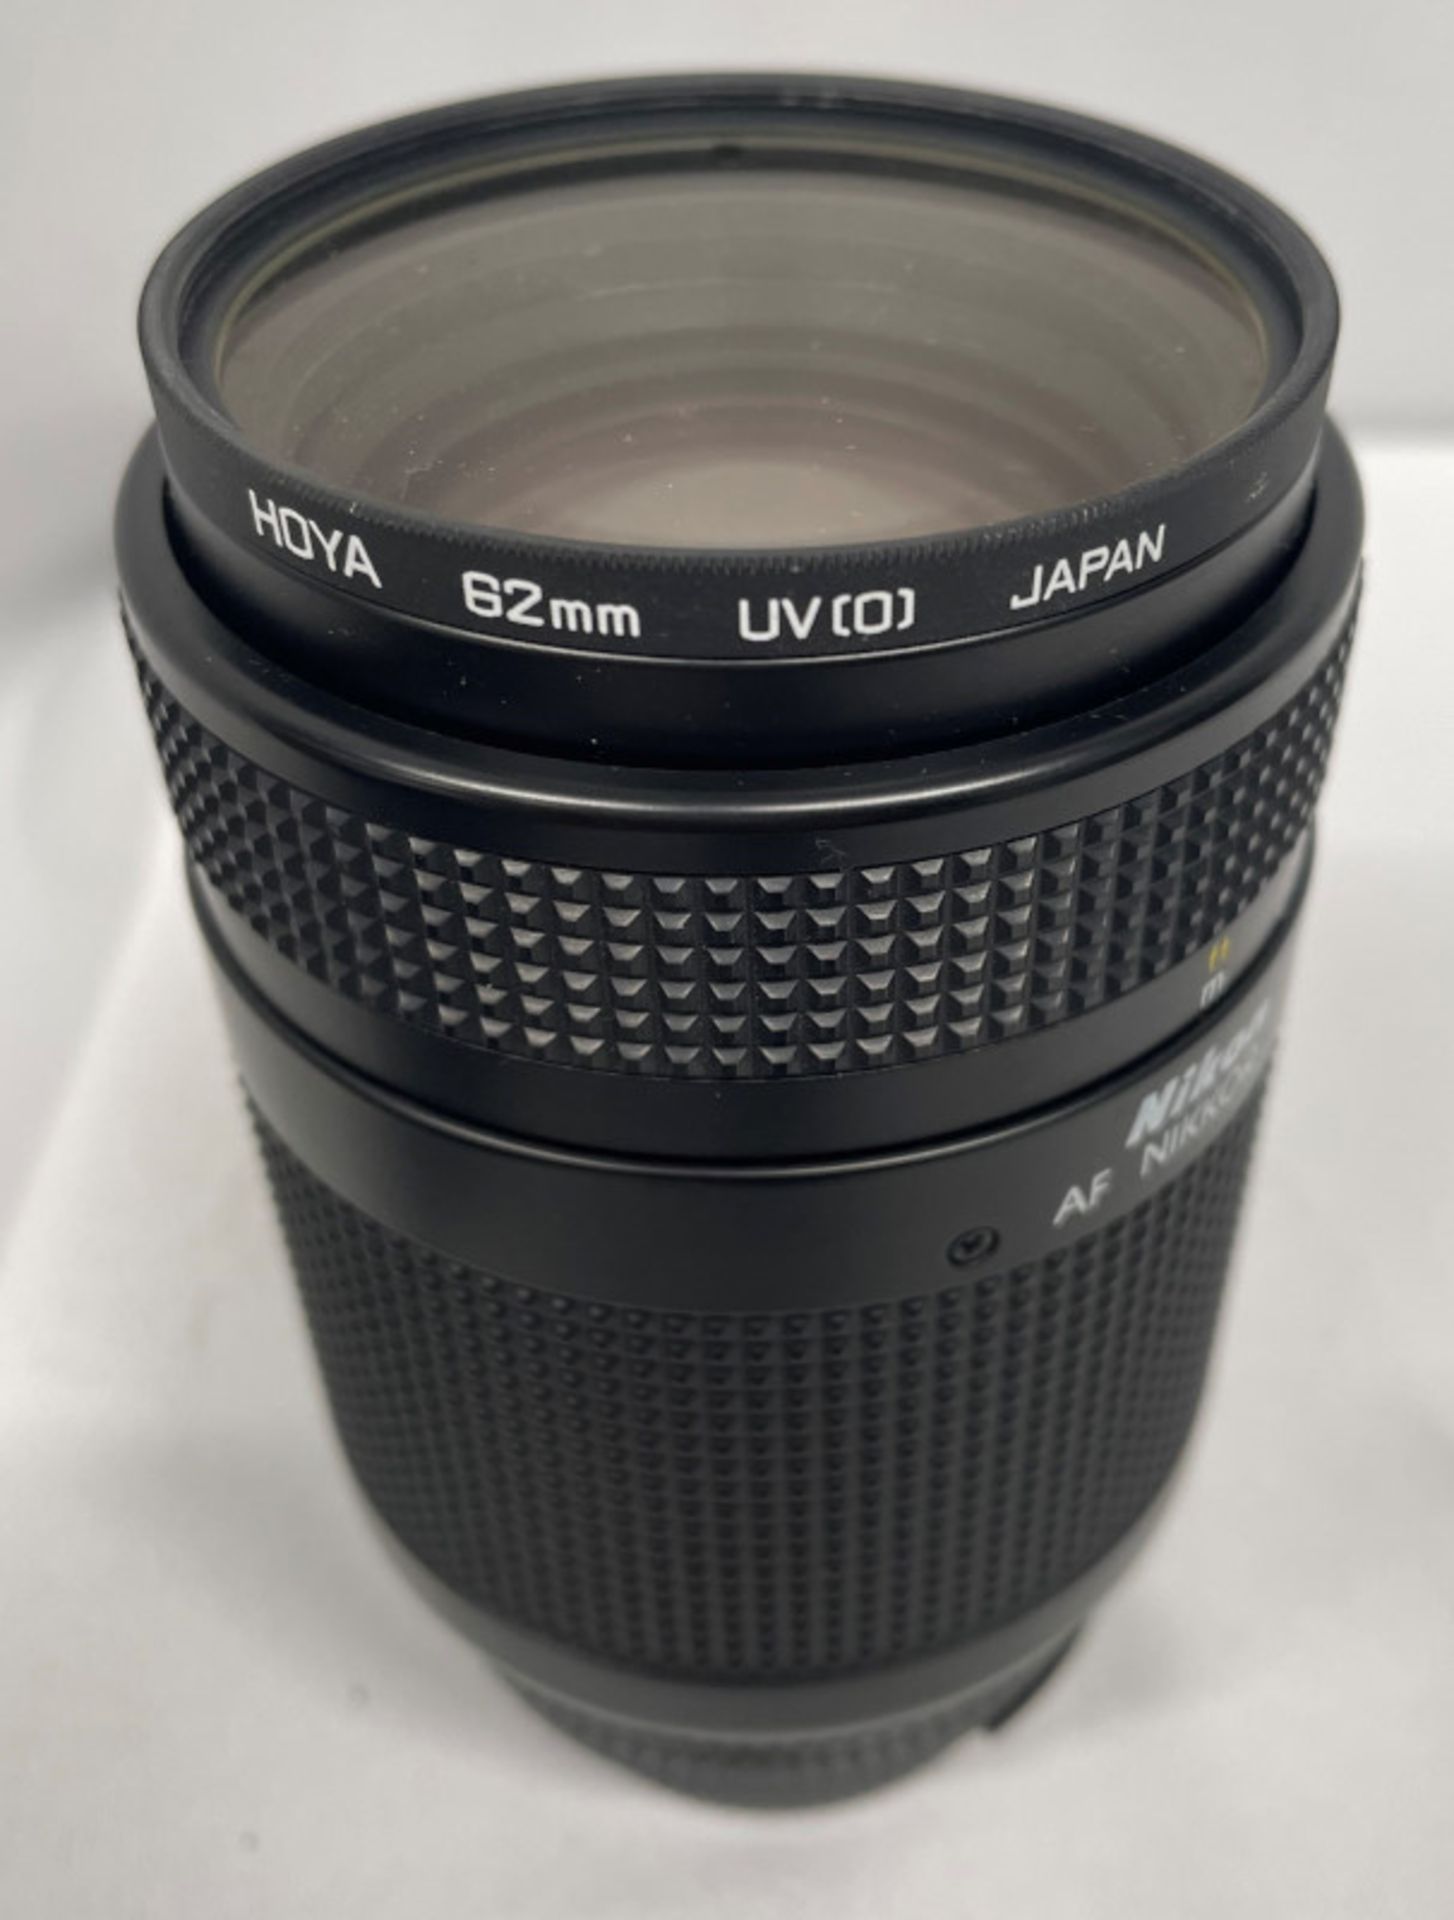 Nikon AF Nikkor 70-210mm - 1:4-5.6 Lens - Serial No. 2432176 with HOYA 62mm UV(O) Filter - Image 5 of 7